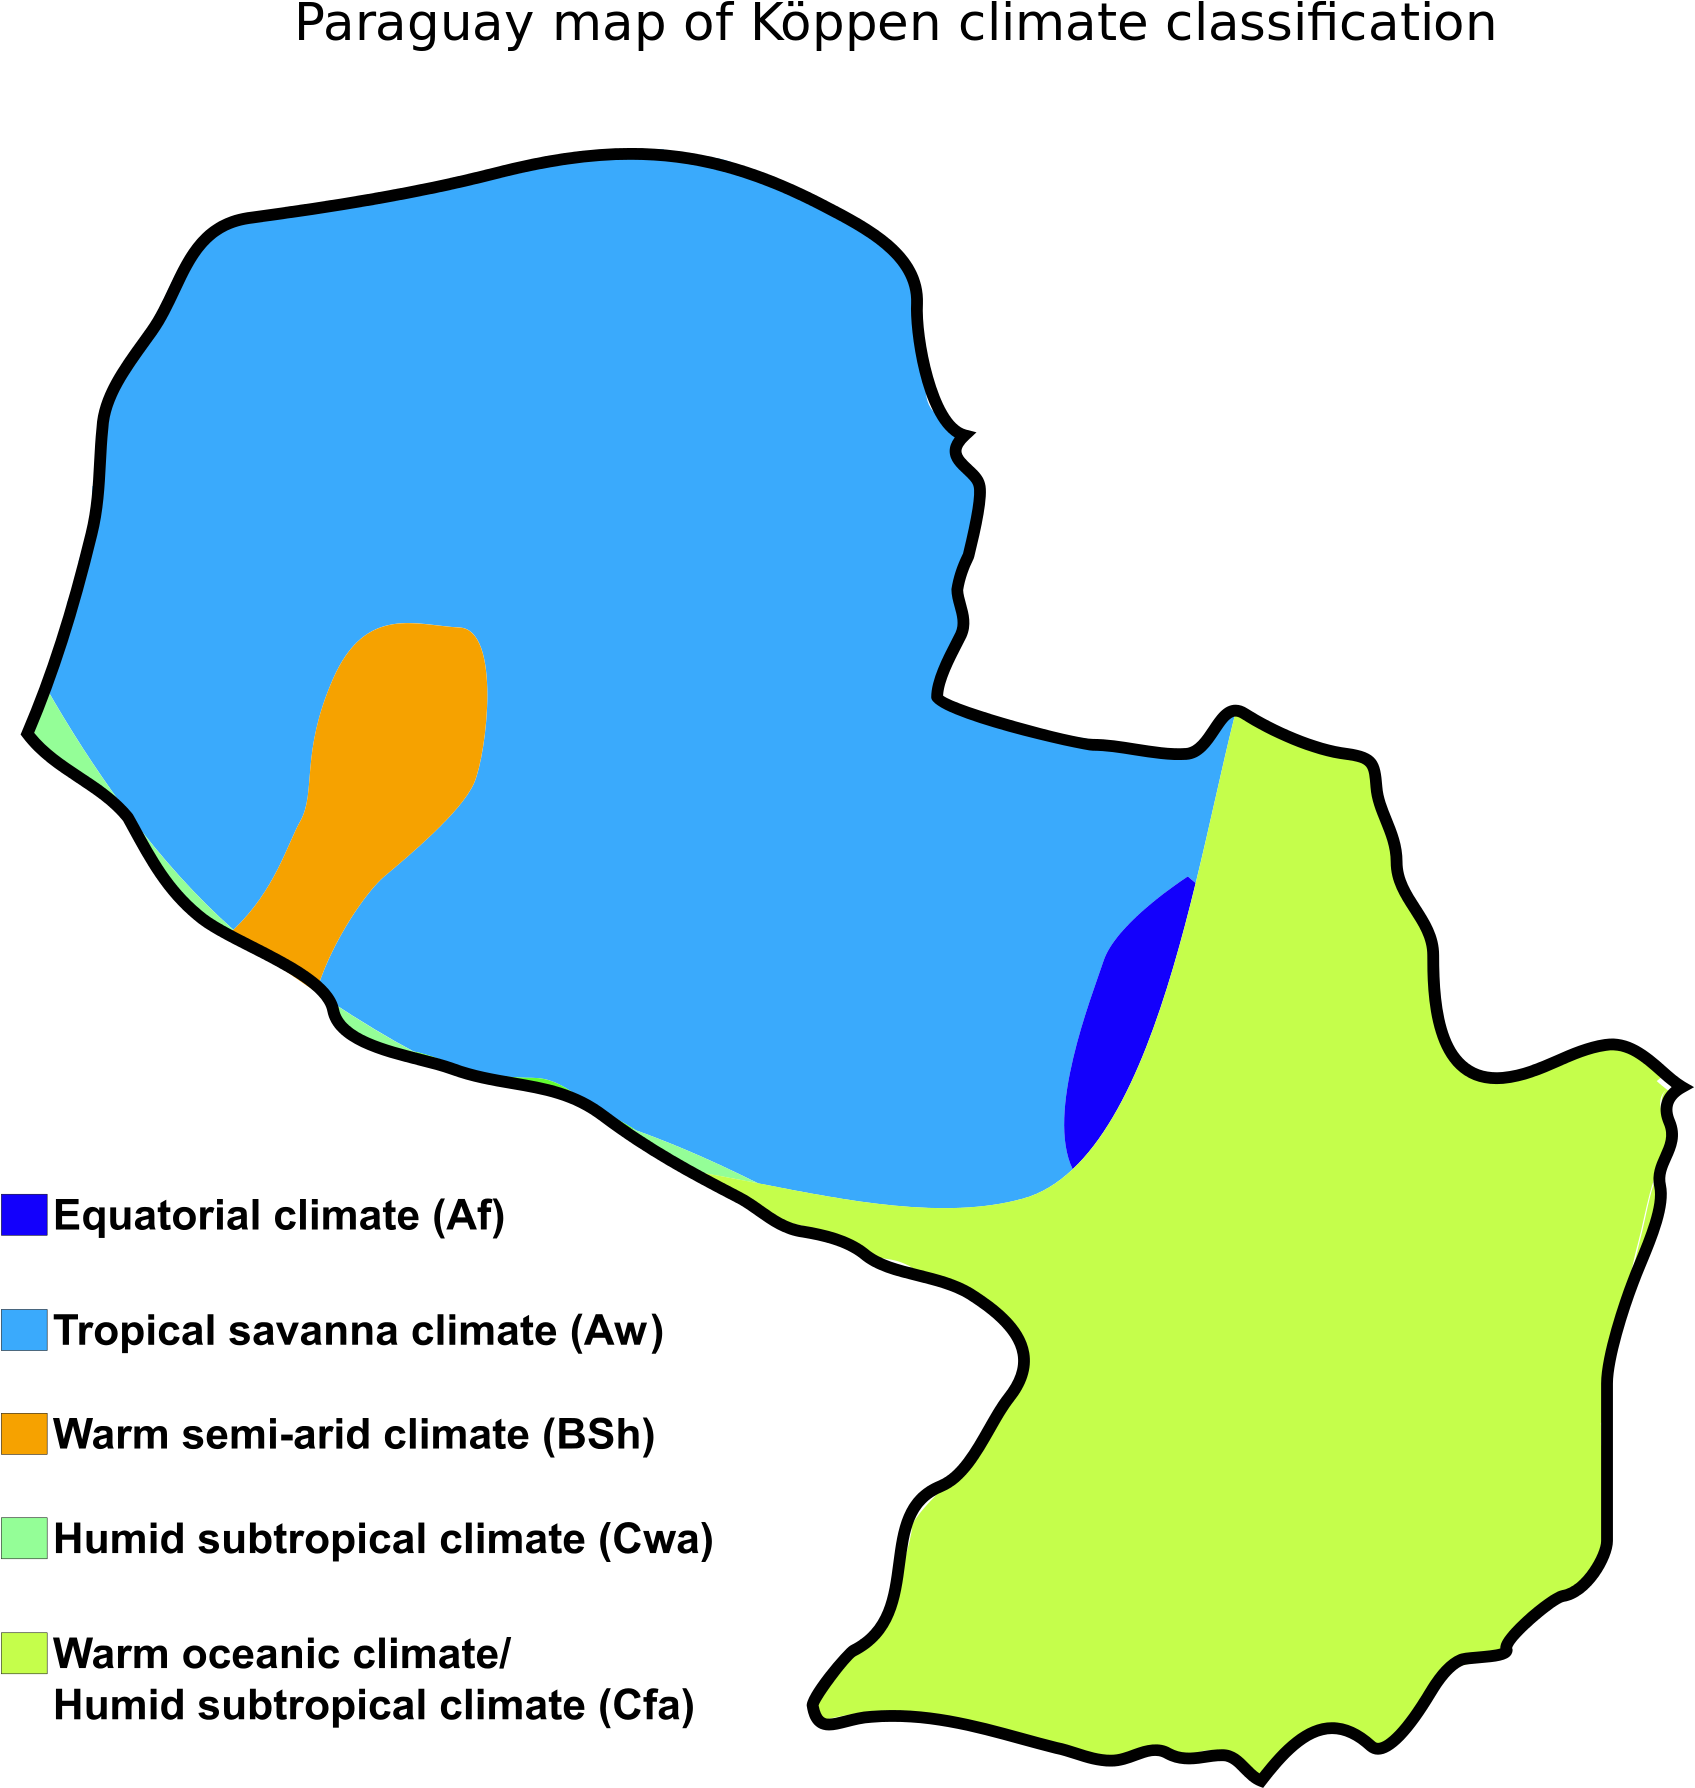 Paraguay Koppen Climate Classification Map